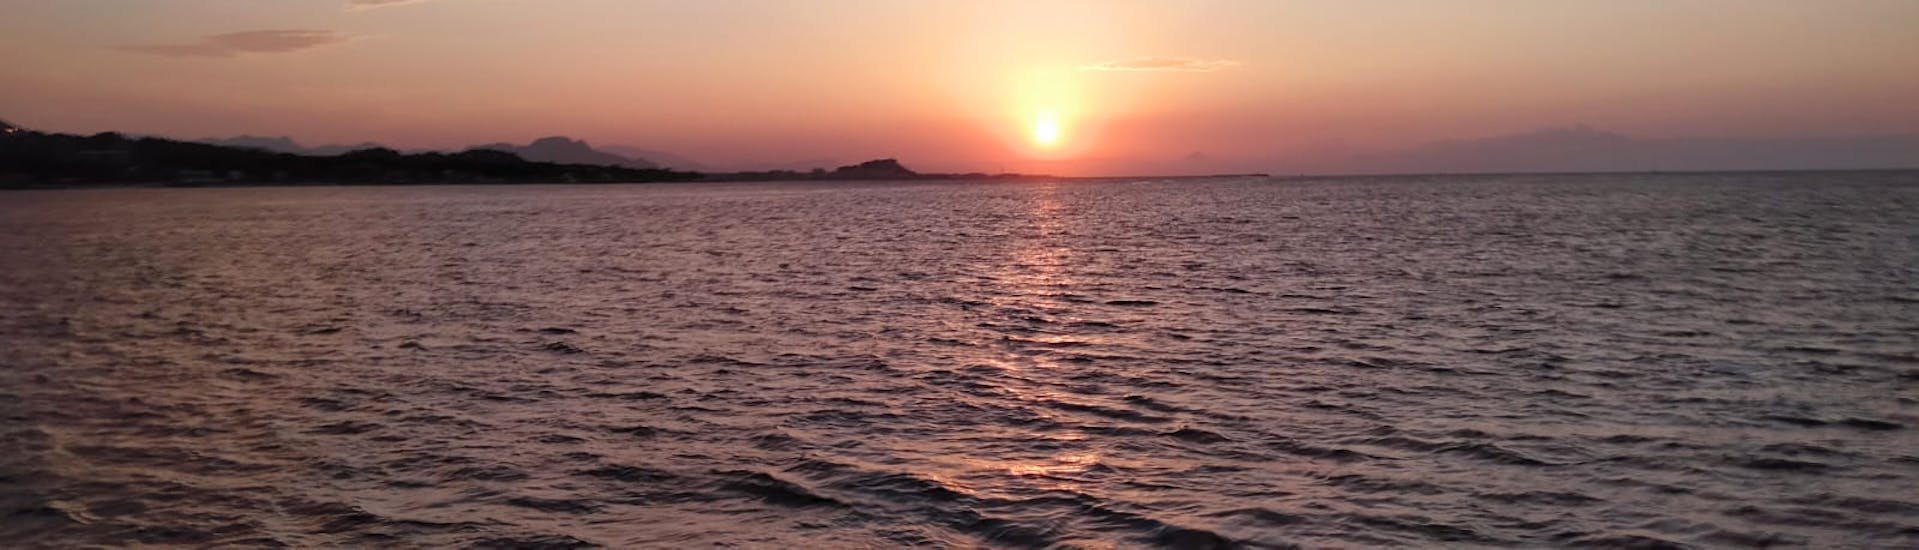 Gita in catamarano da Jávea (Xàbia) a Cova Tallada al tramonto e visita turistica.